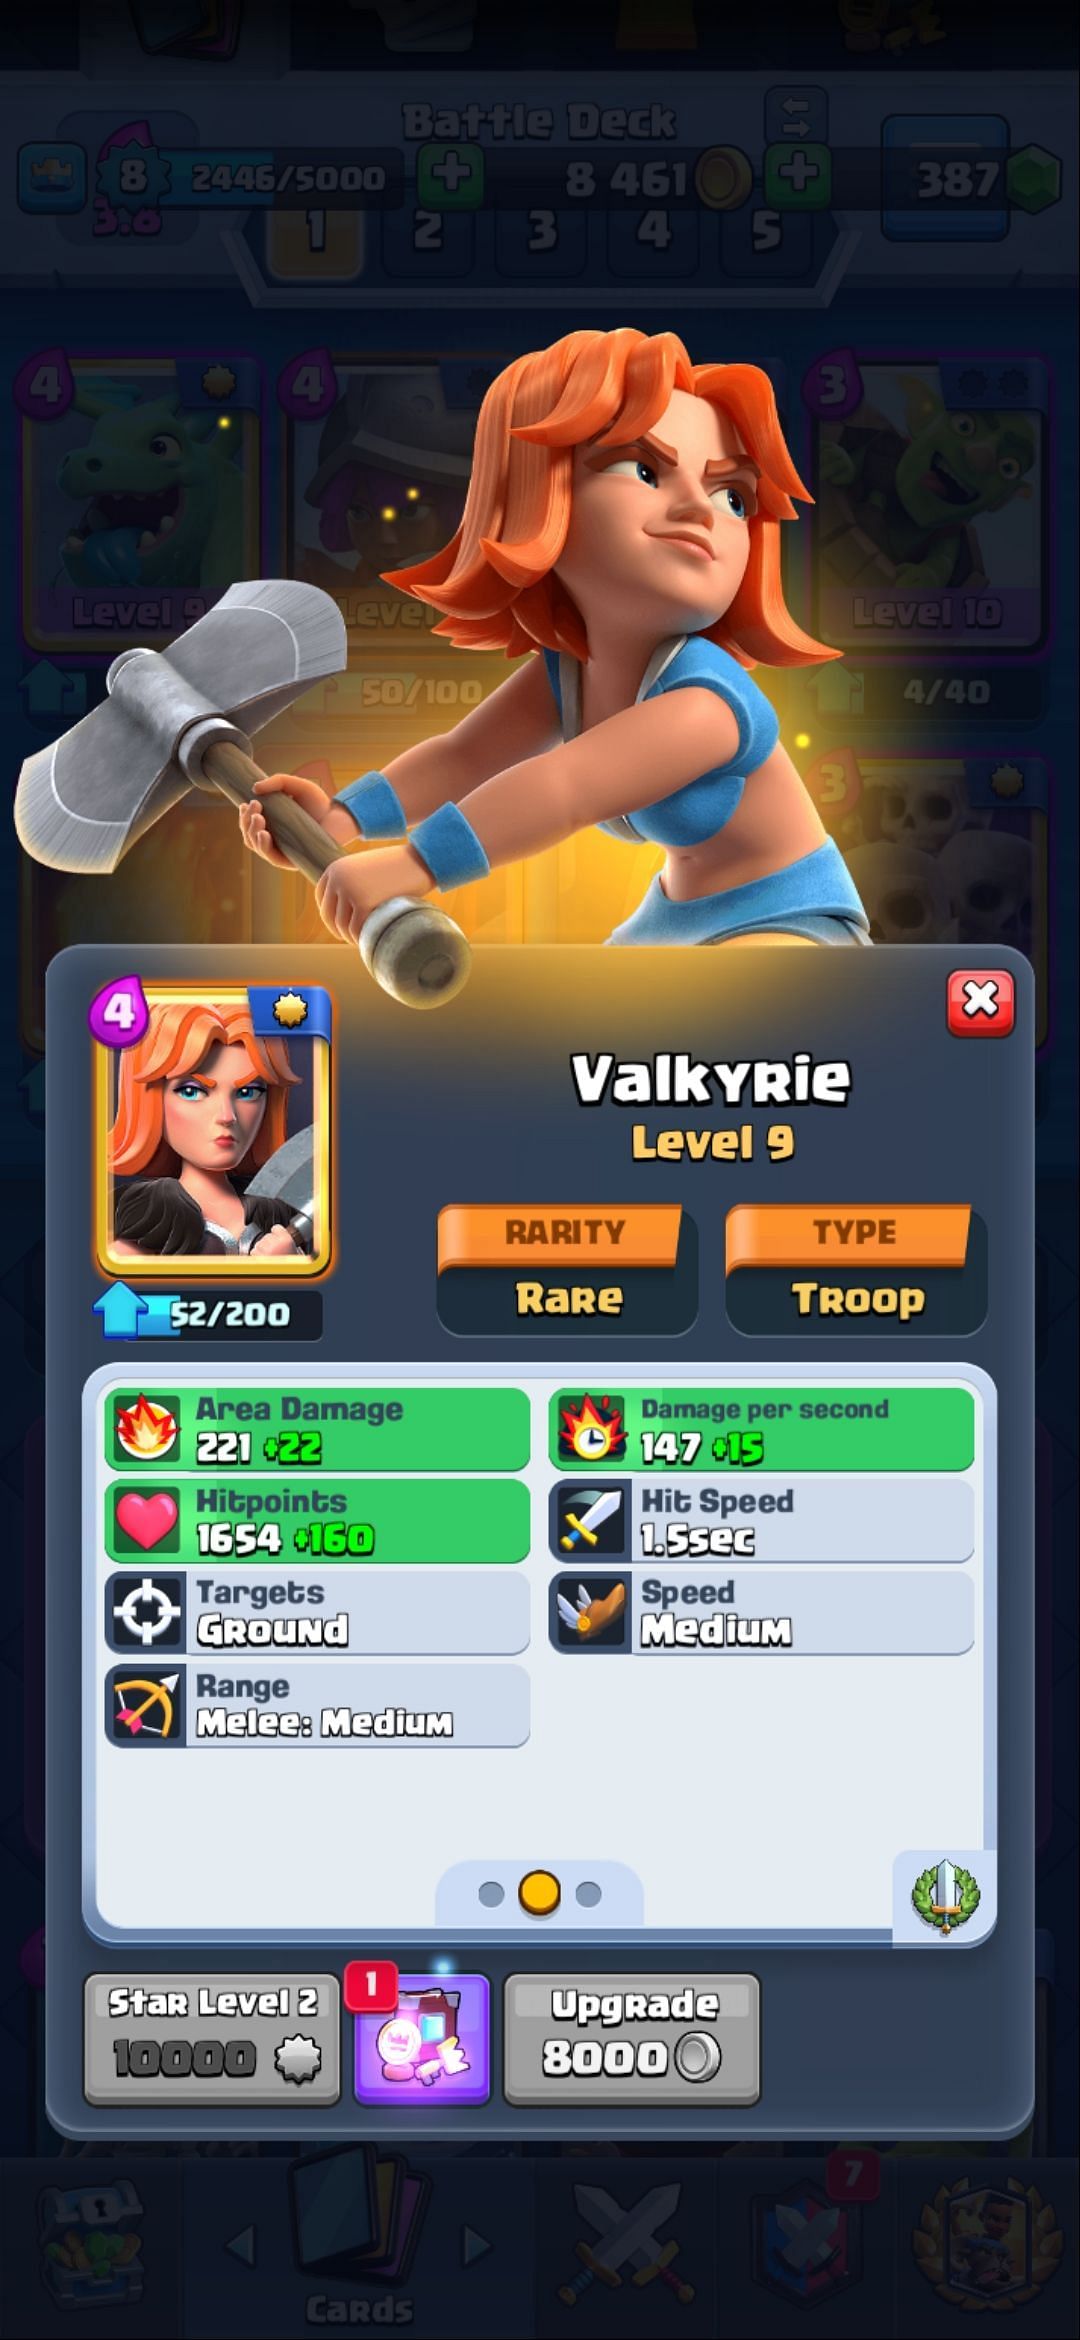 The Valkyrie card (Image via Sportskeeda)